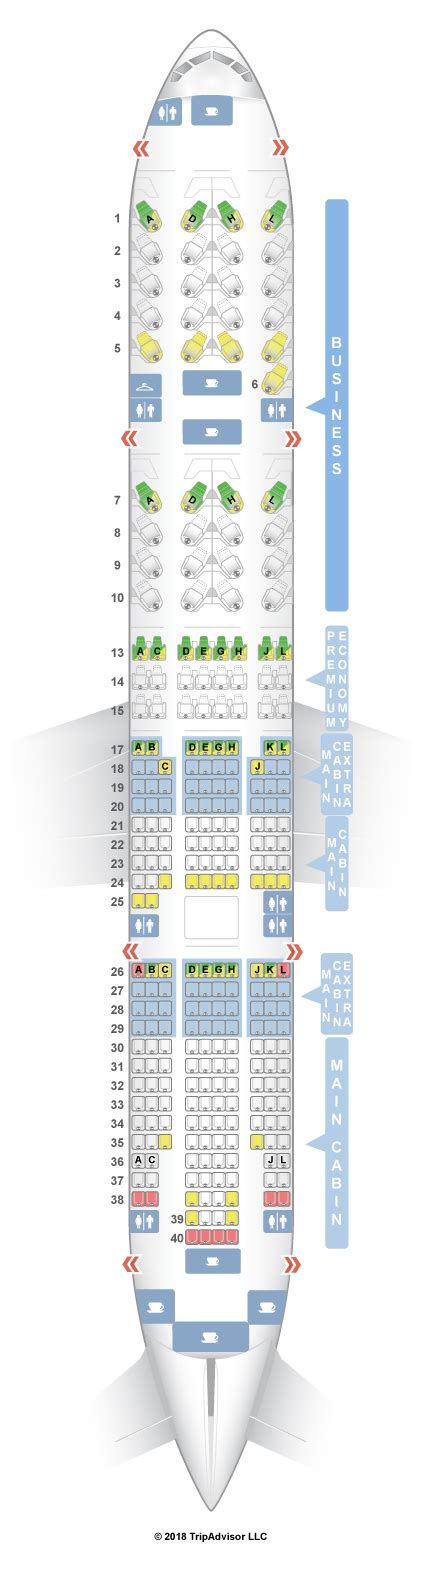 Seatguru boeing 777 200. Boeing 777-200 (772) Layout 3; Boeing 777-200 (772) Layout 4; ... SeatGuru was created to help travelers choose the best seats and in-flight amenities. Forum; 